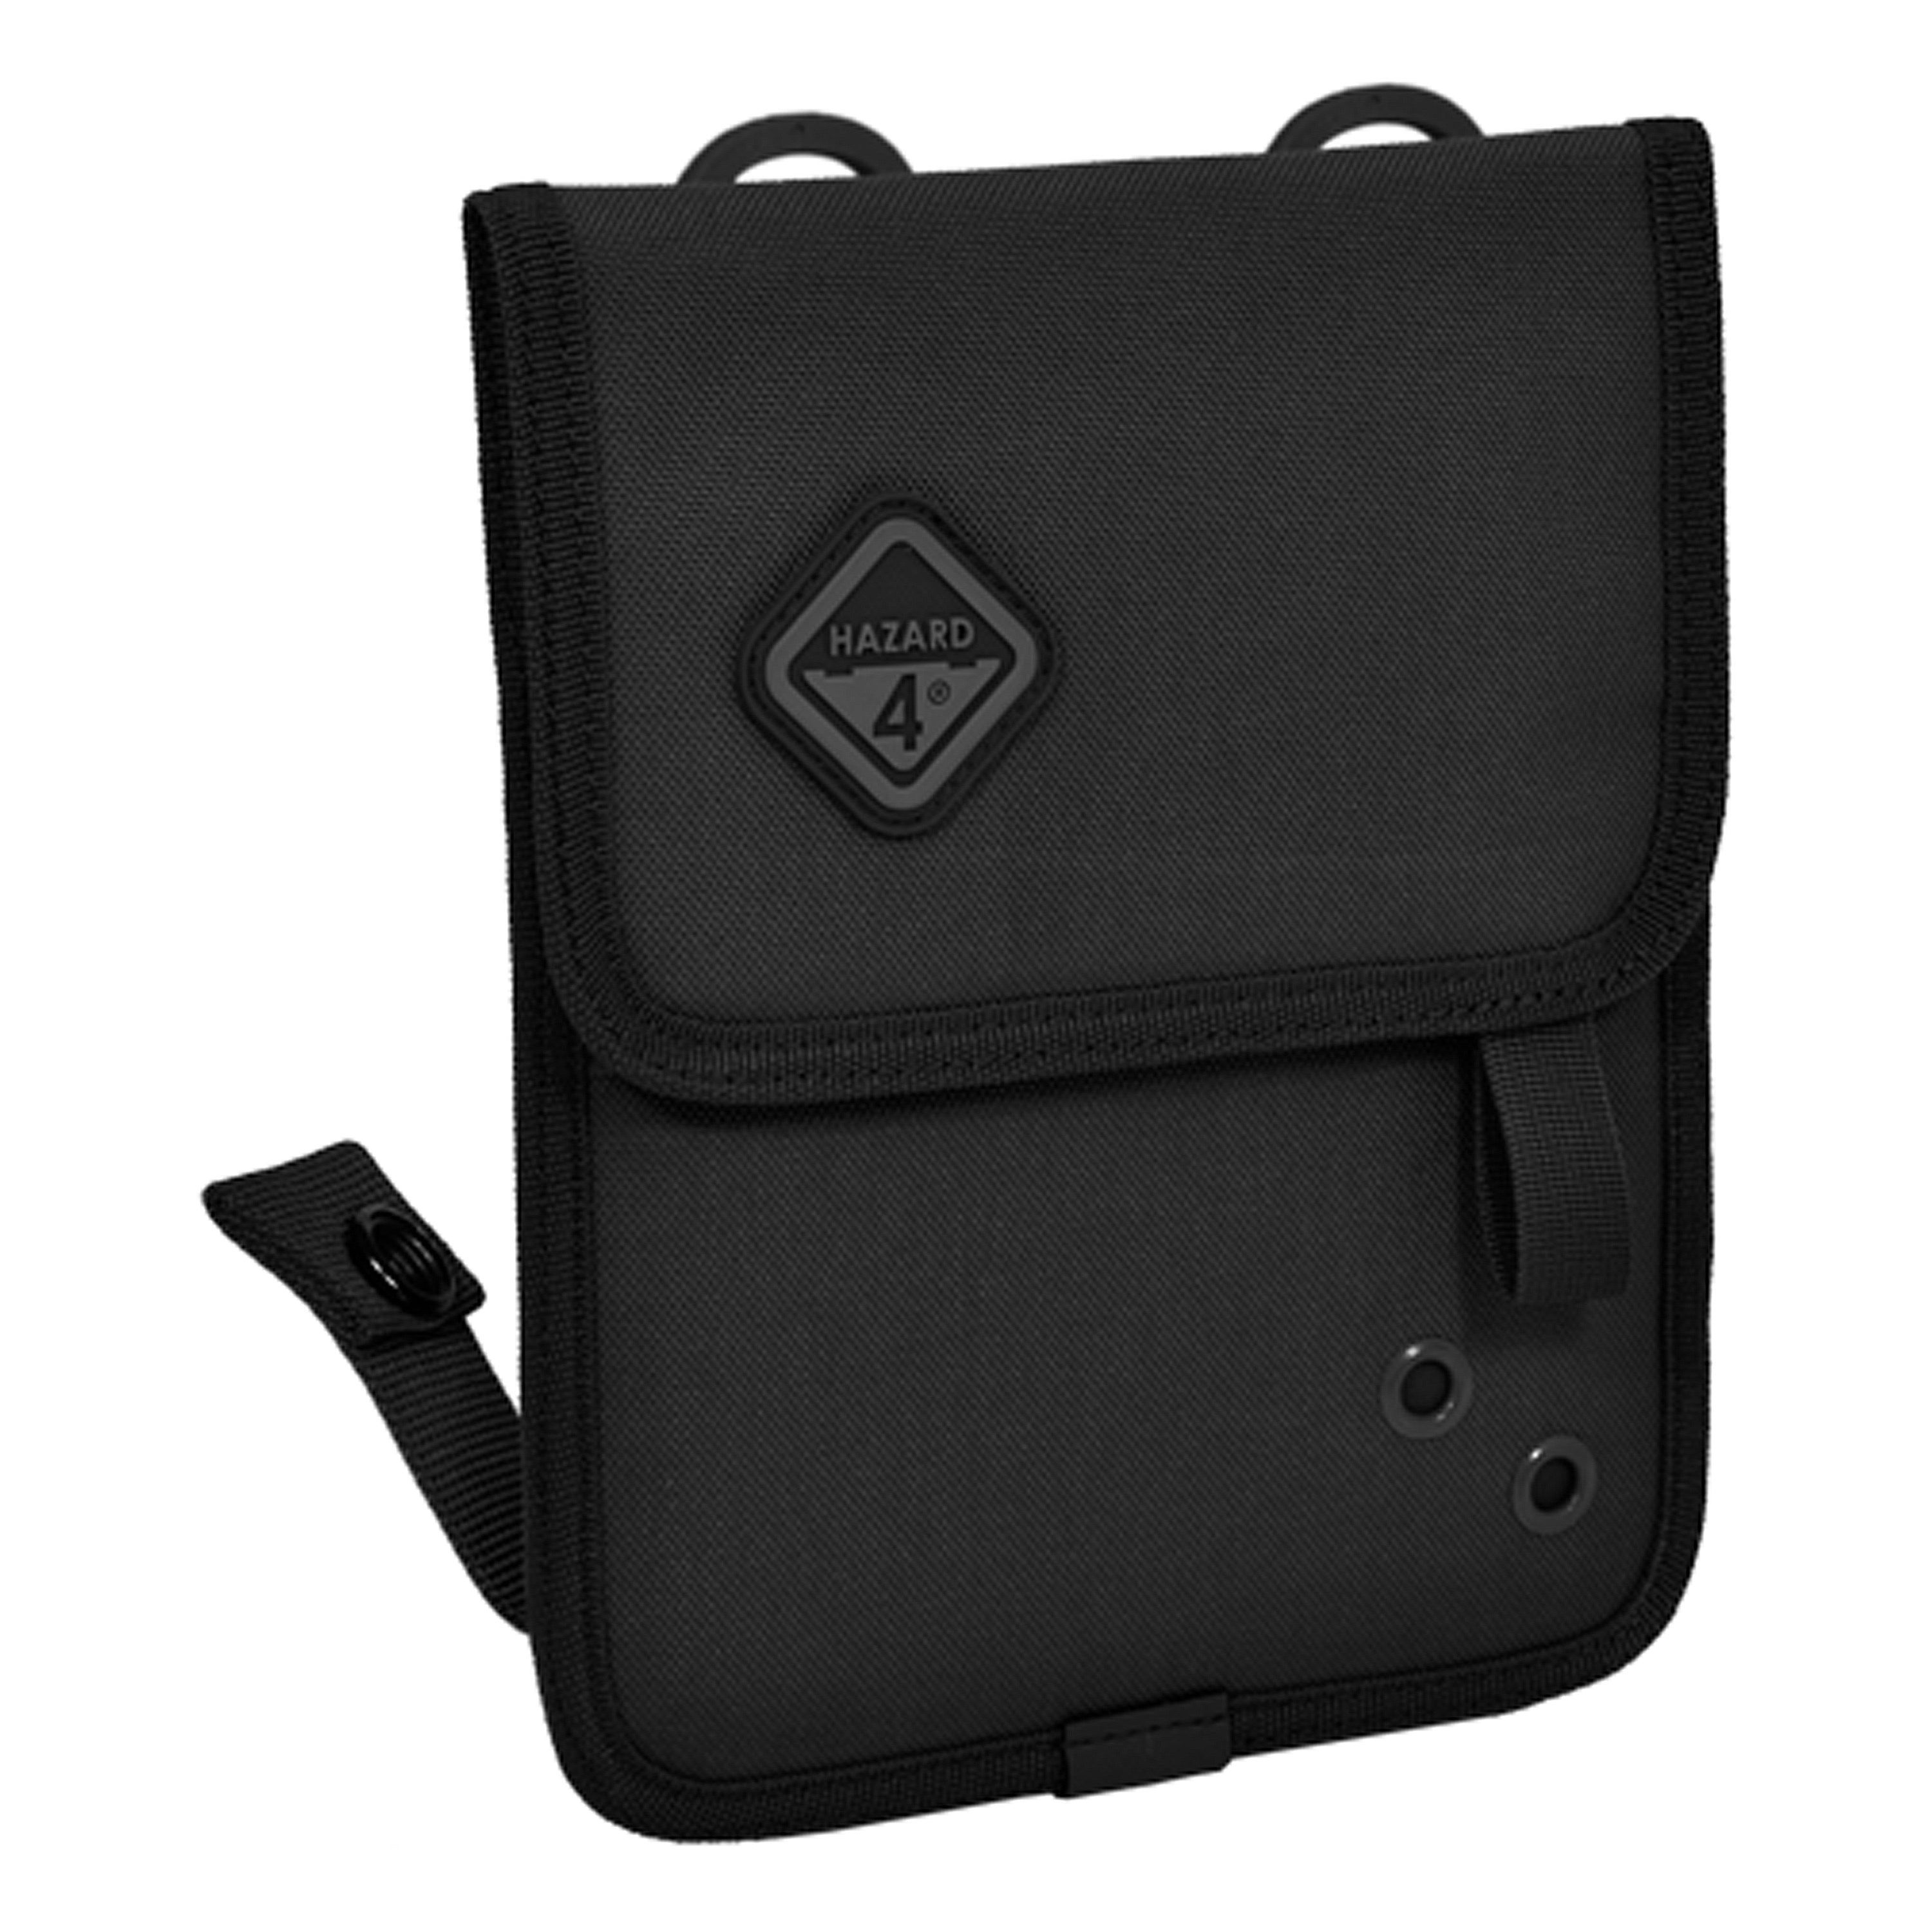 Hazard 4 LaunchPad Mini - Tactical iPad Mini Sleeve black | Hazard 4 ...